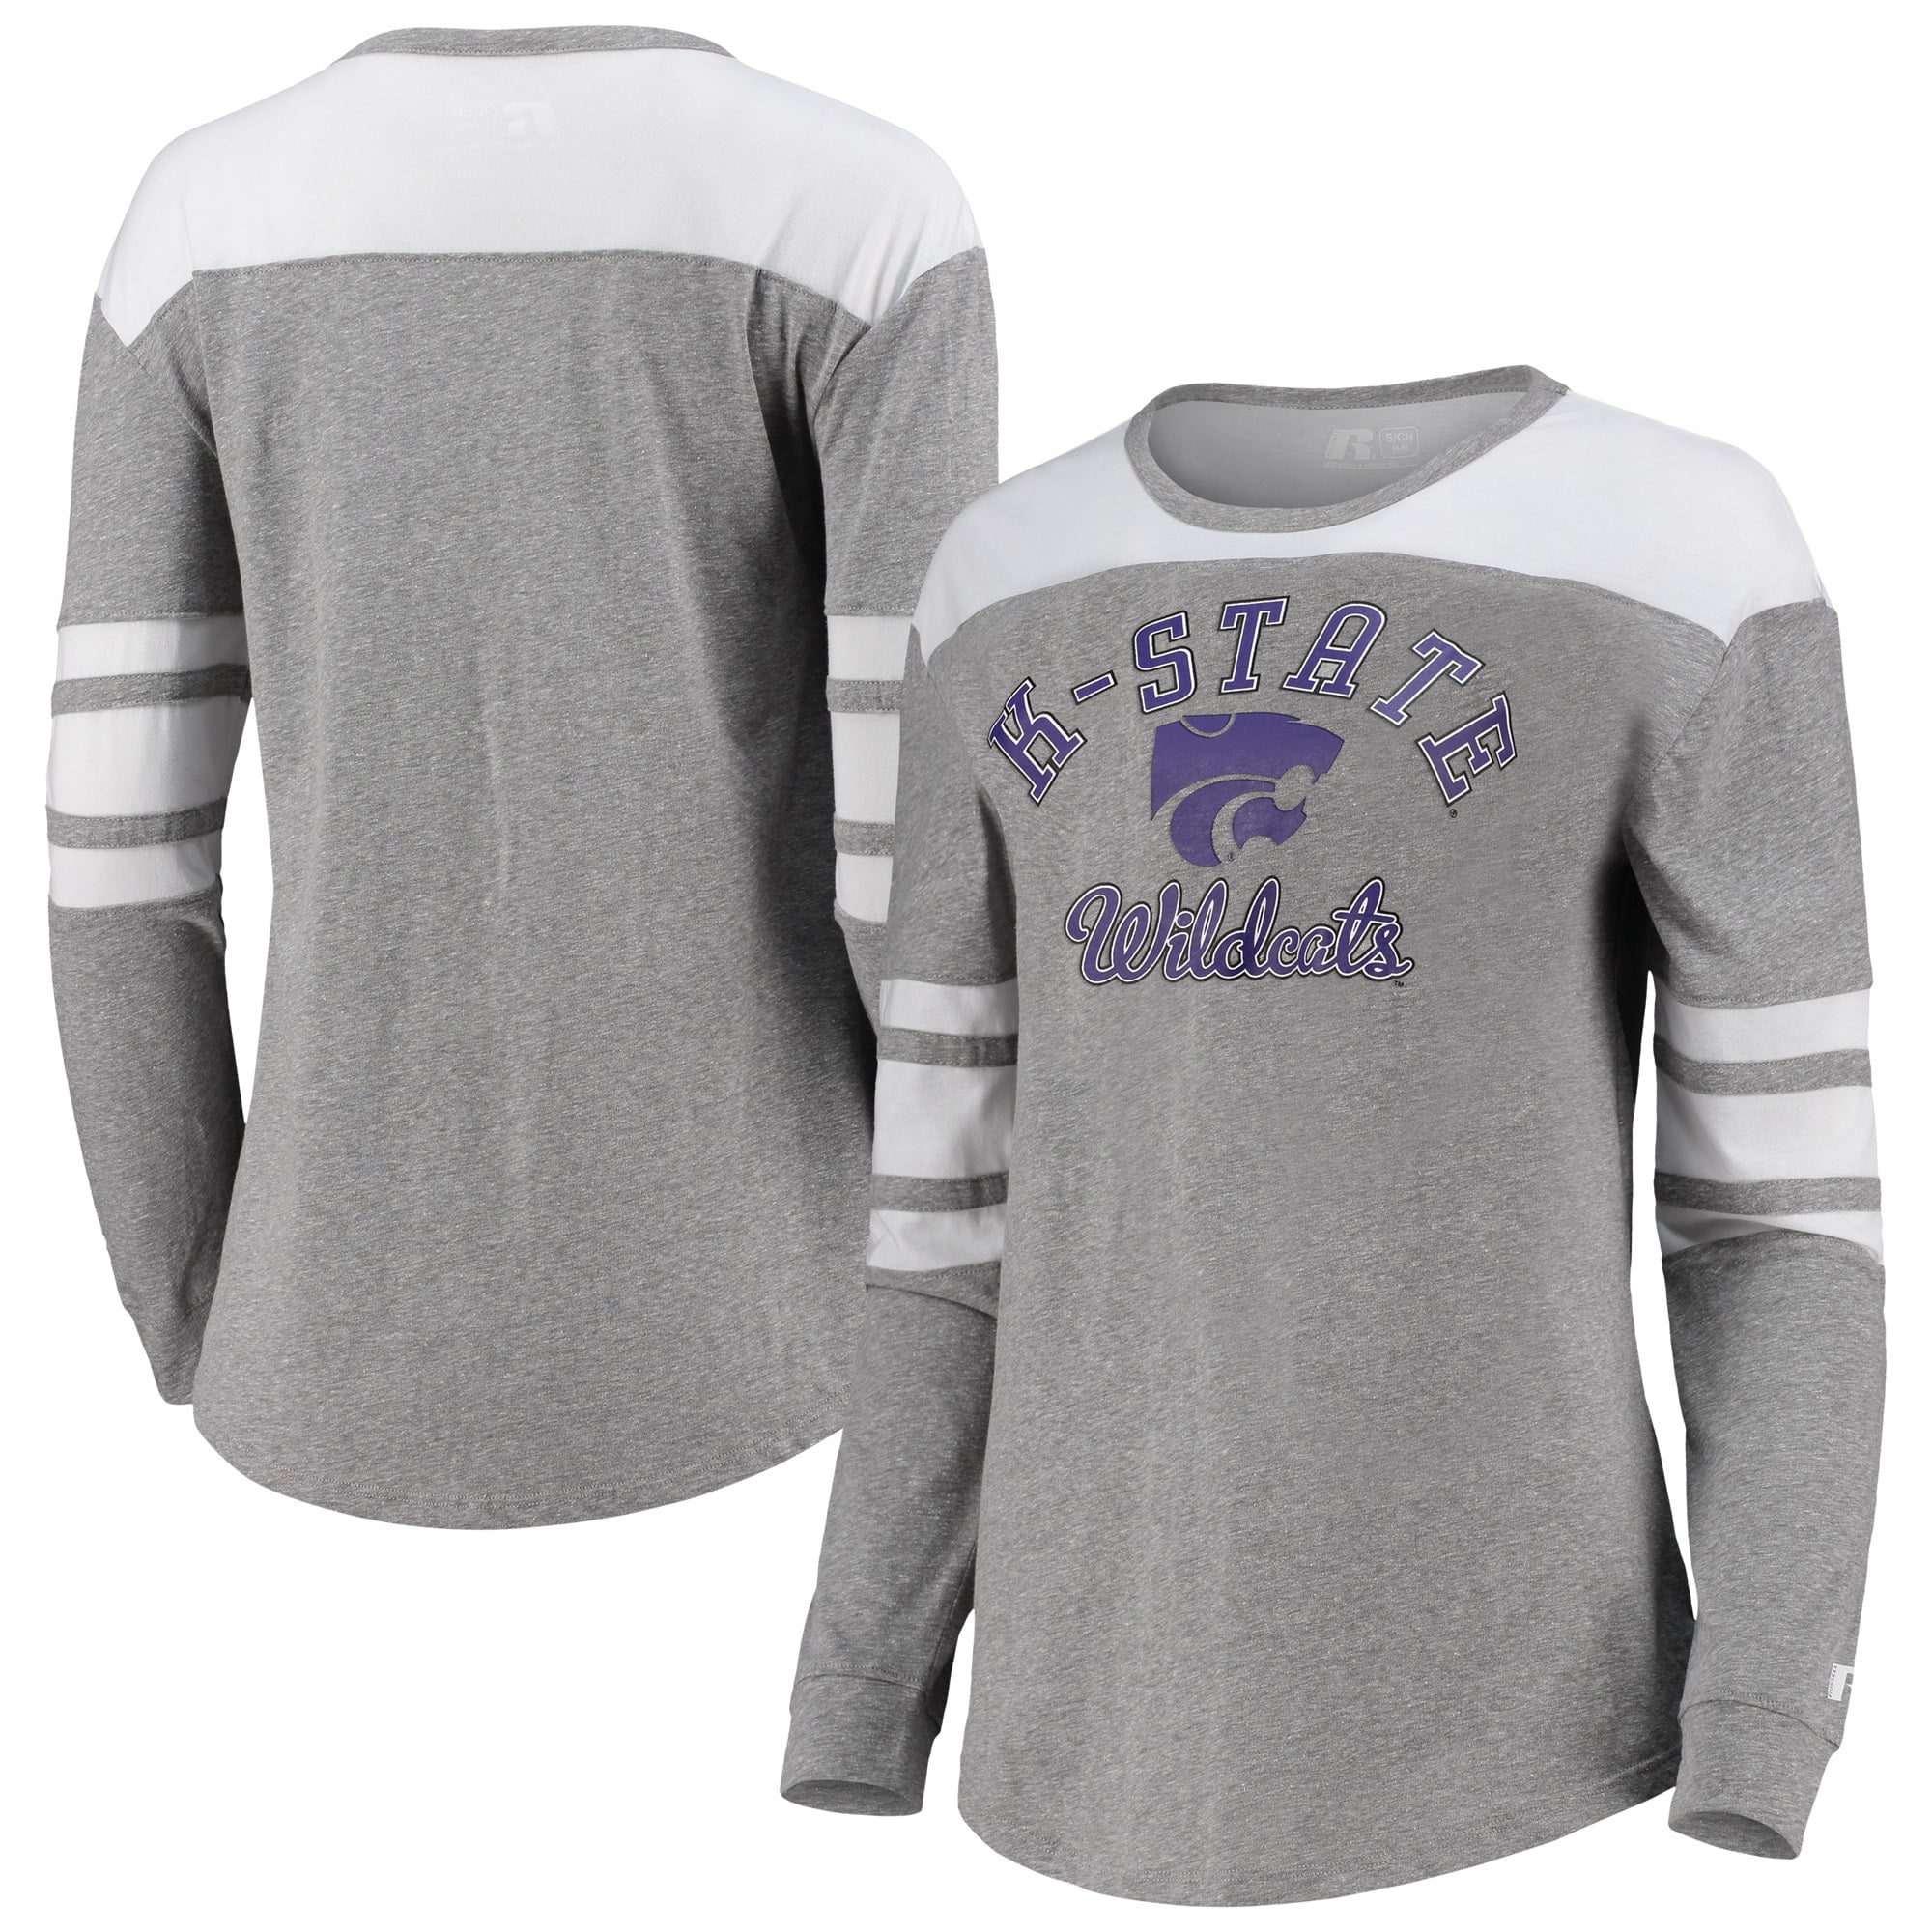 NCAA Kansas State Wildcats CL18KSU45 Unisex Long Sleeve Pocket T-Shirt